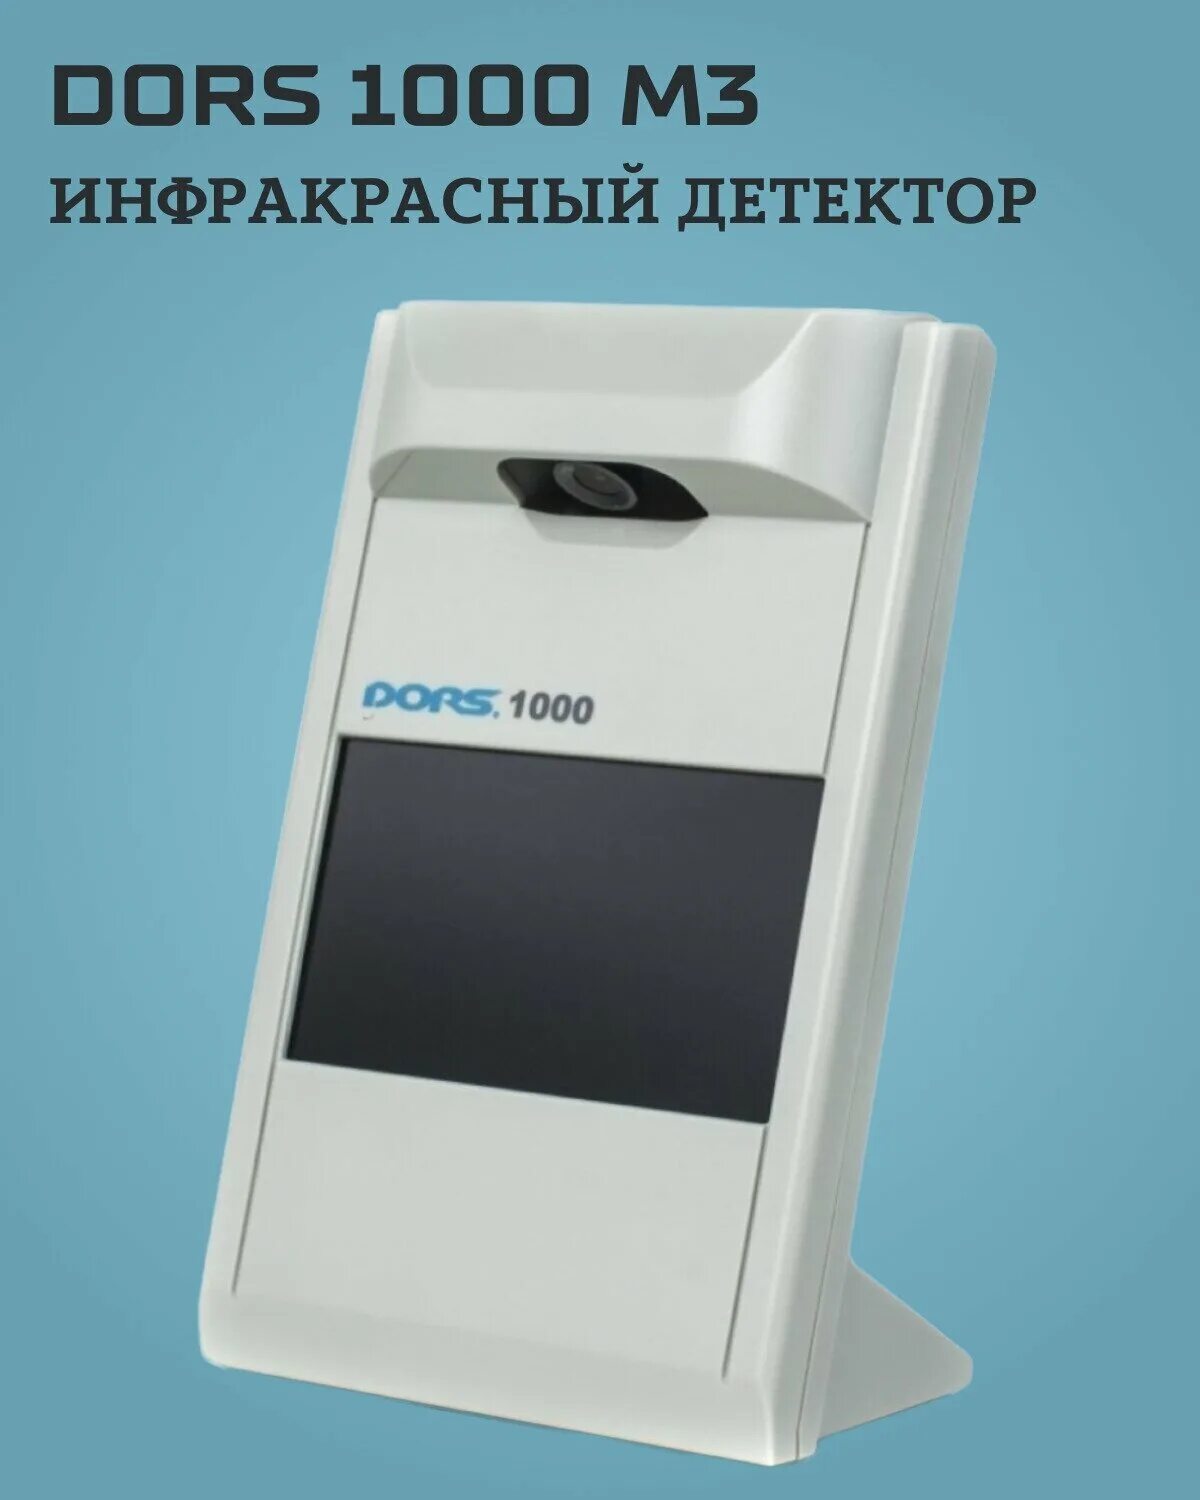 Dors 1000 m3. Детектор банкнот dors 1000. Infrared Detector dors 1000. Детектор банкнот dors 1000 m3.